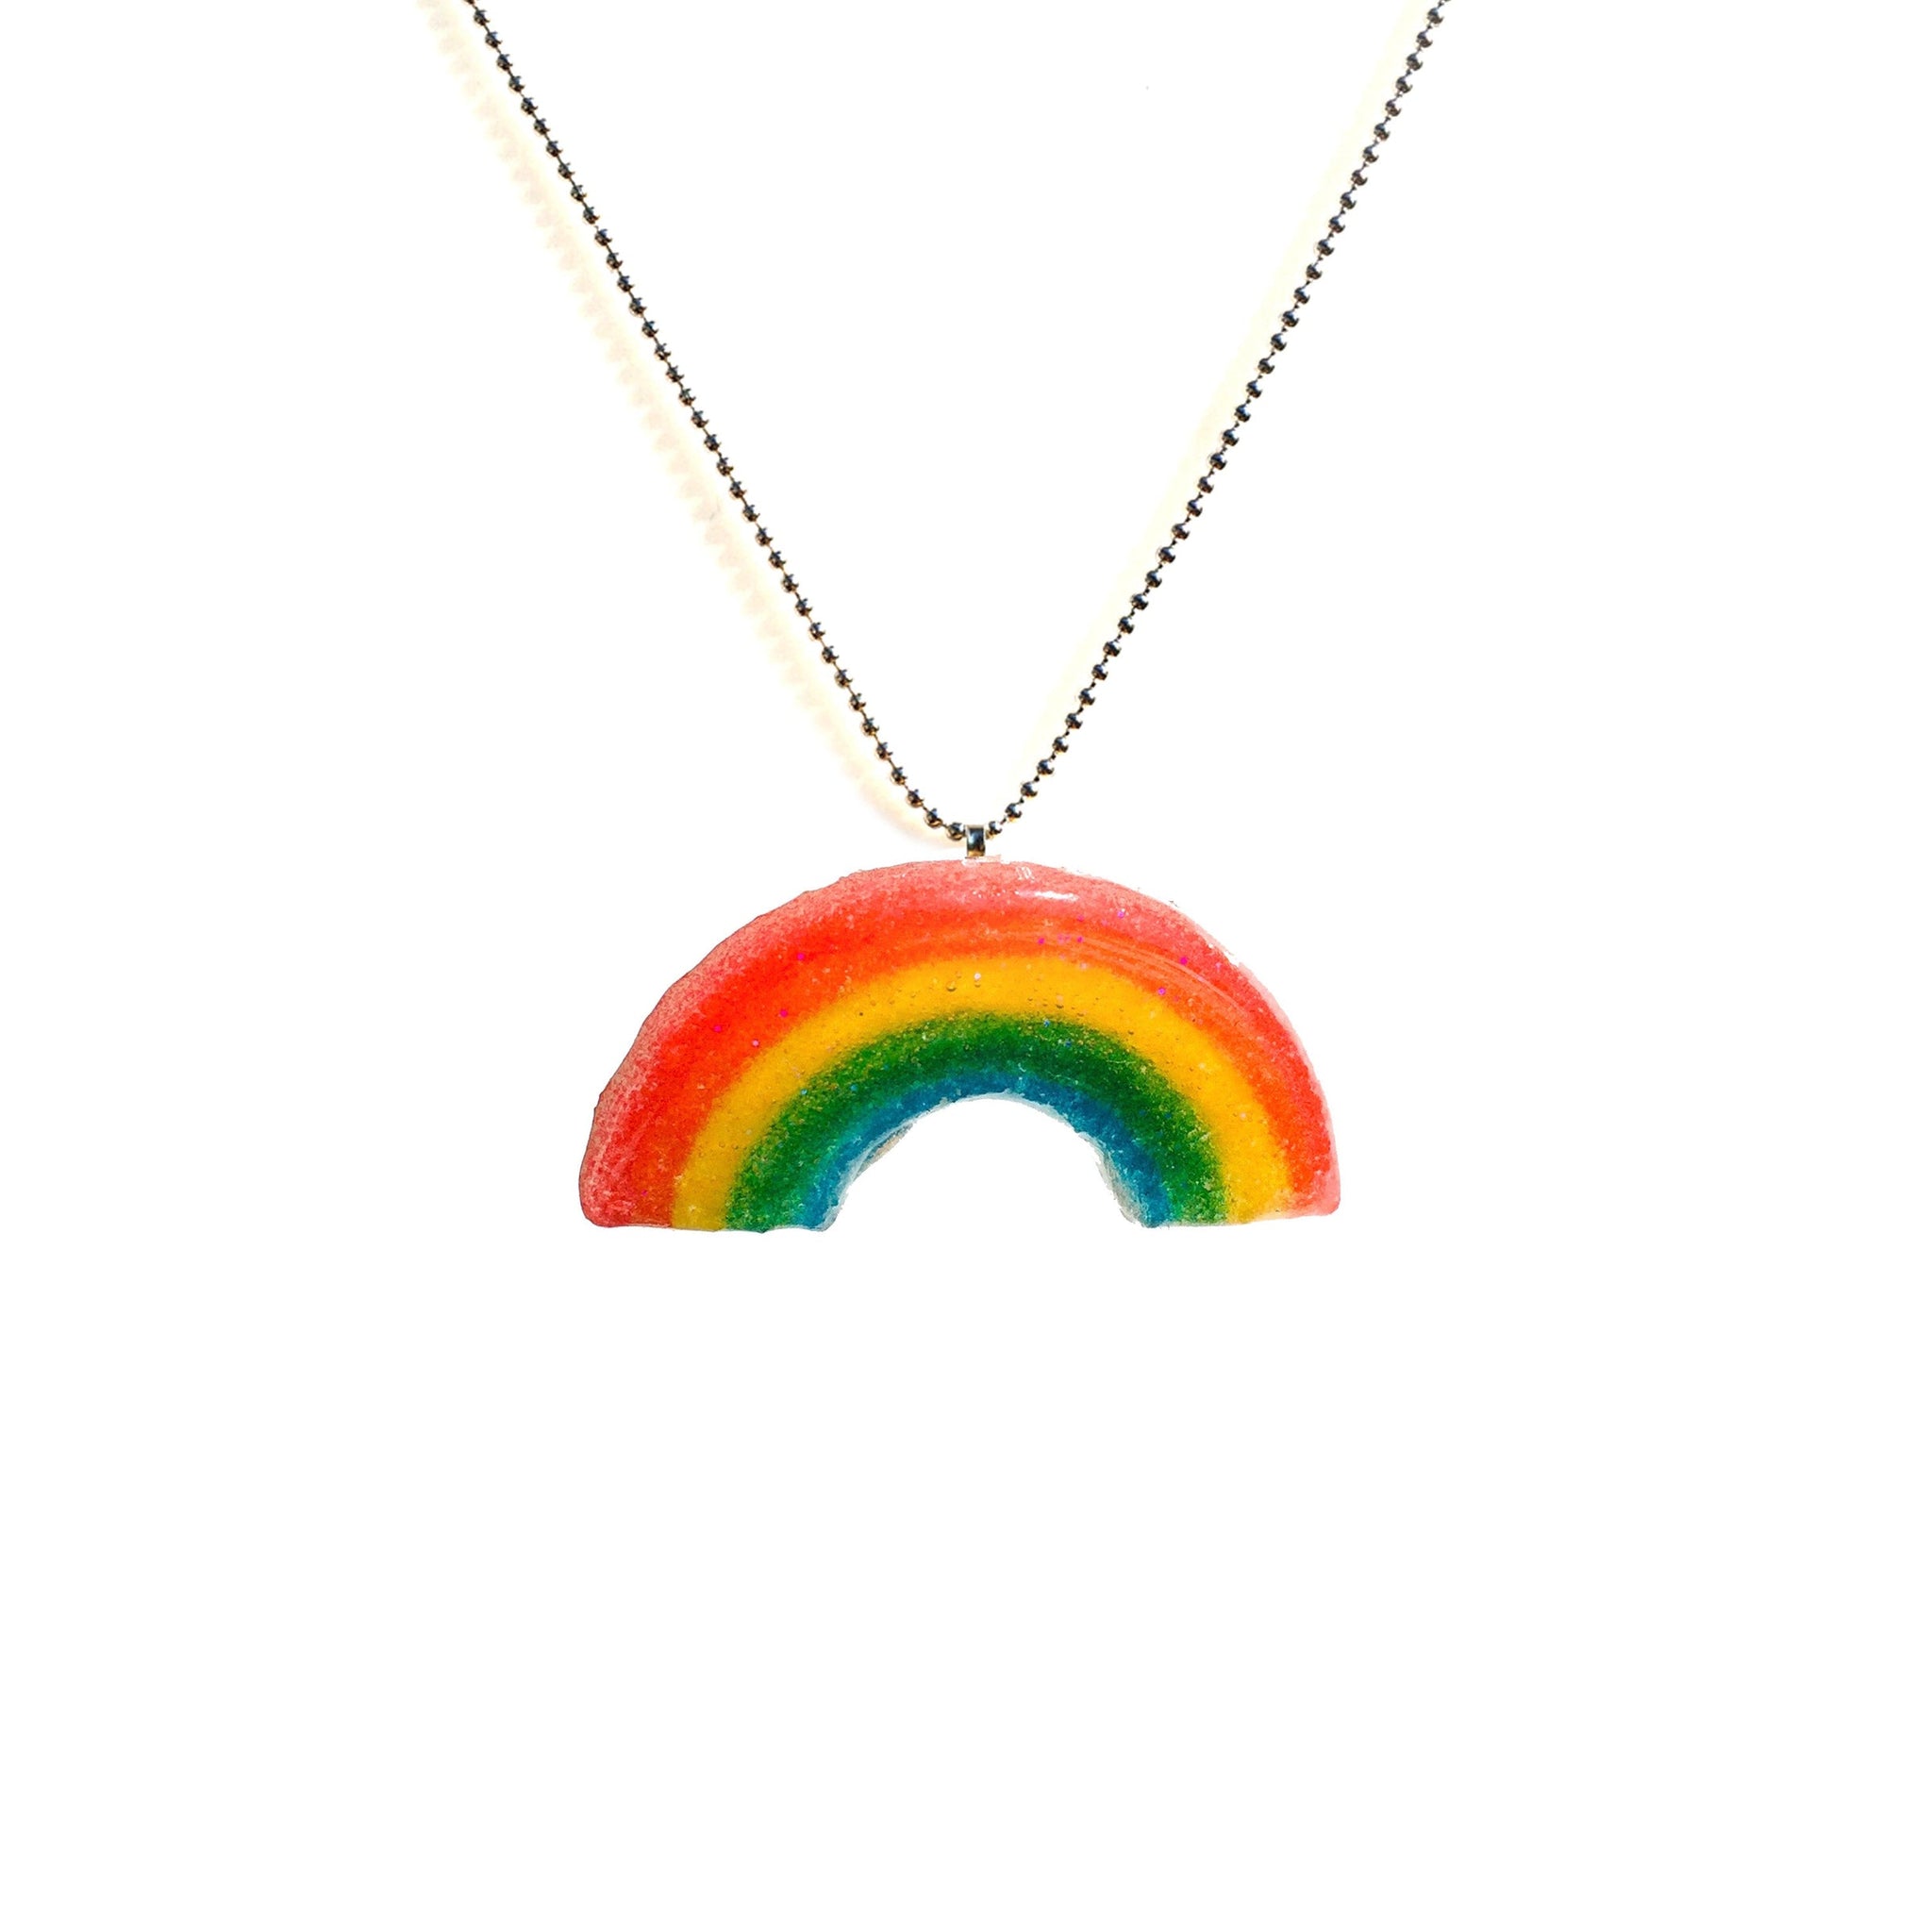 Rainbow Sugar Necklace